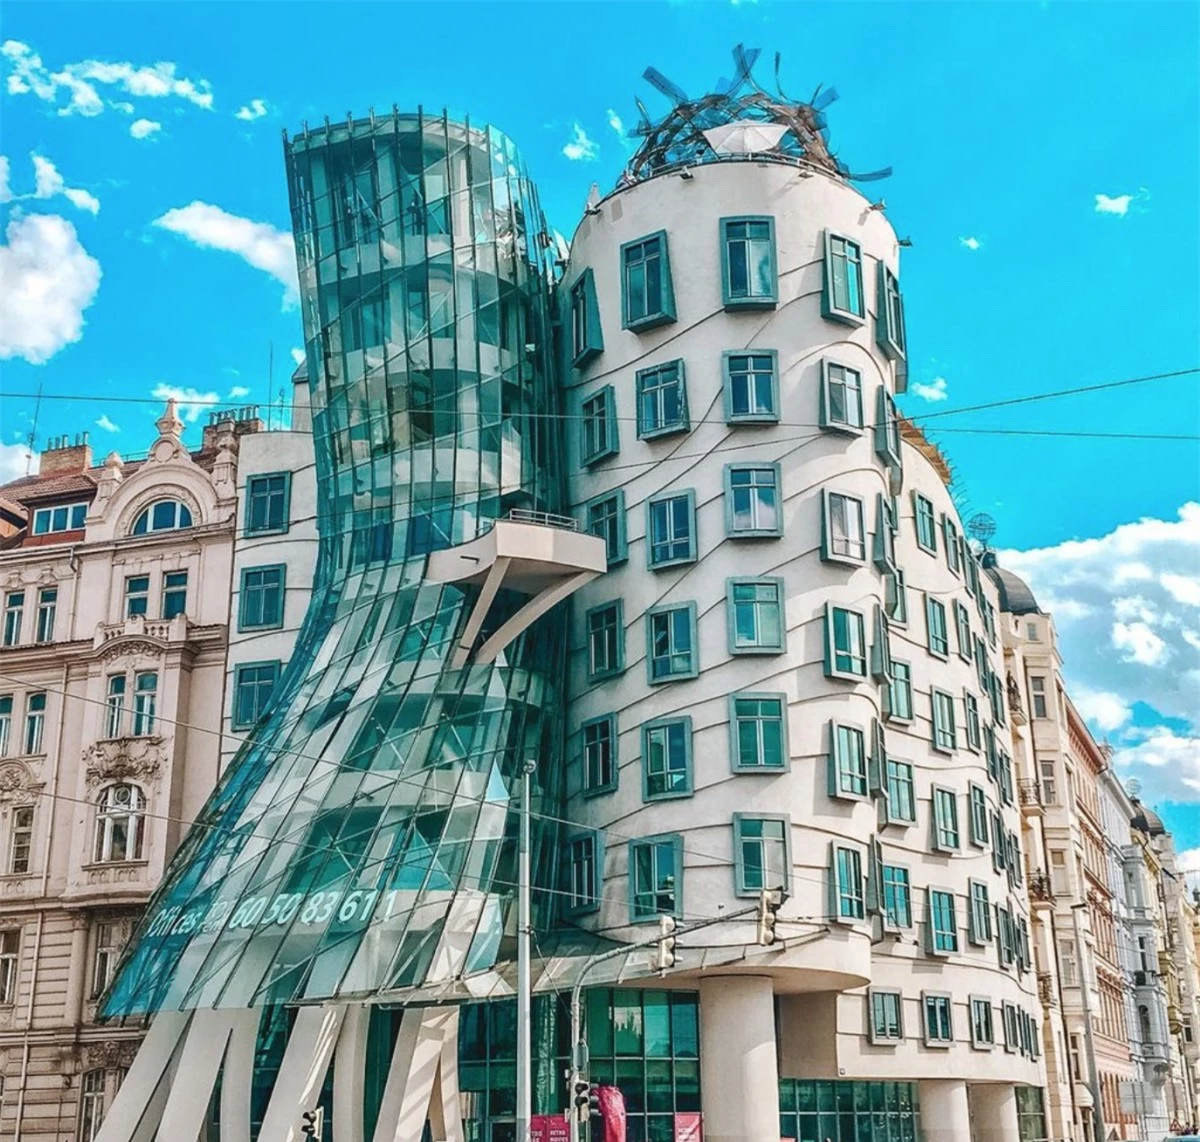 Tòa nhà ở thủ đô Praha, Cộng hòa Séc được thiết kế với hình dáng lạ kỳ, đúng như lên gọi 'lóng' của nó - 'Tòa nhà Khiêu vũ'